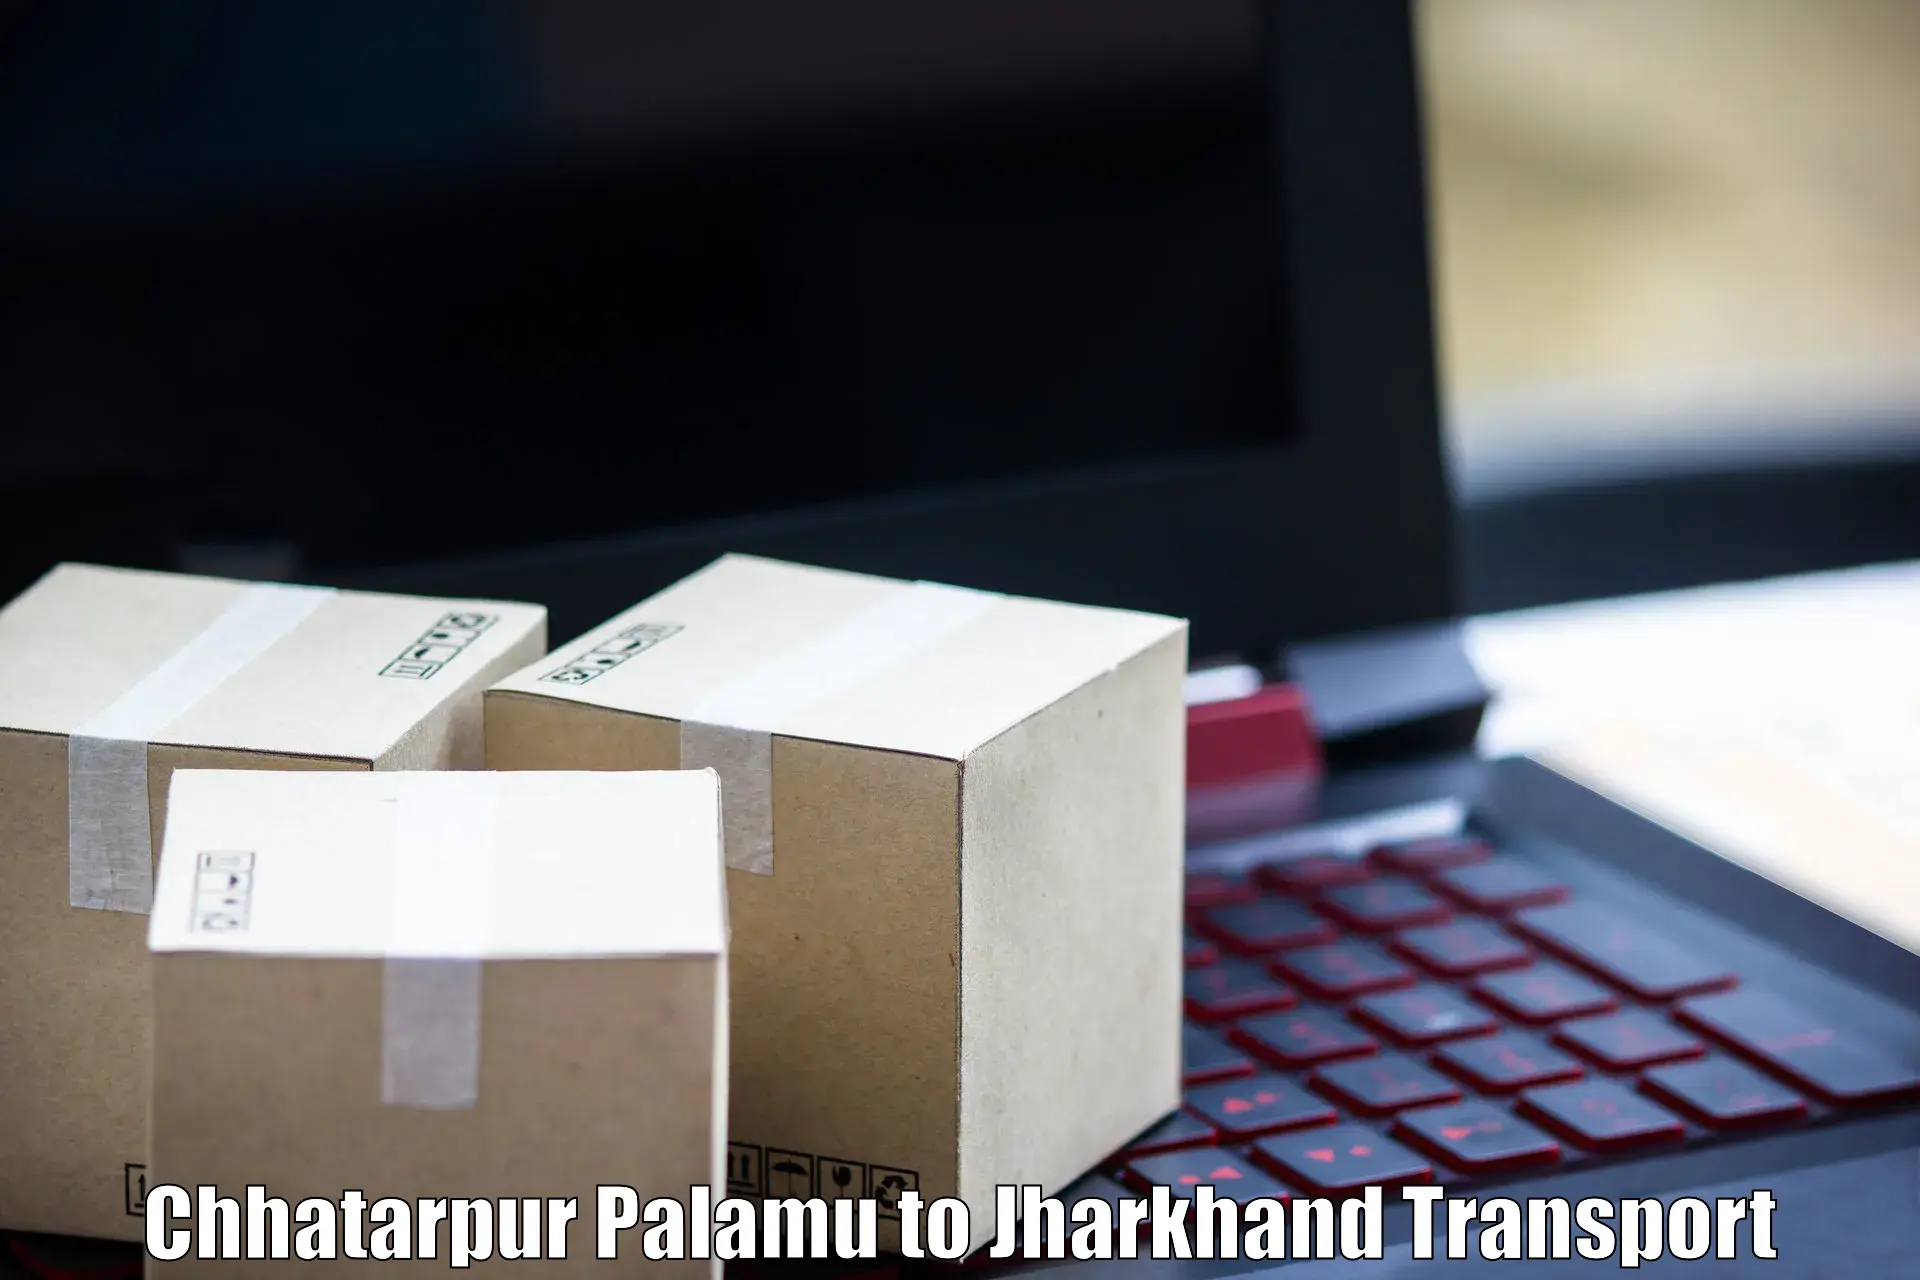 Shipping partner Chhatarpur Palamu to Poreyahat